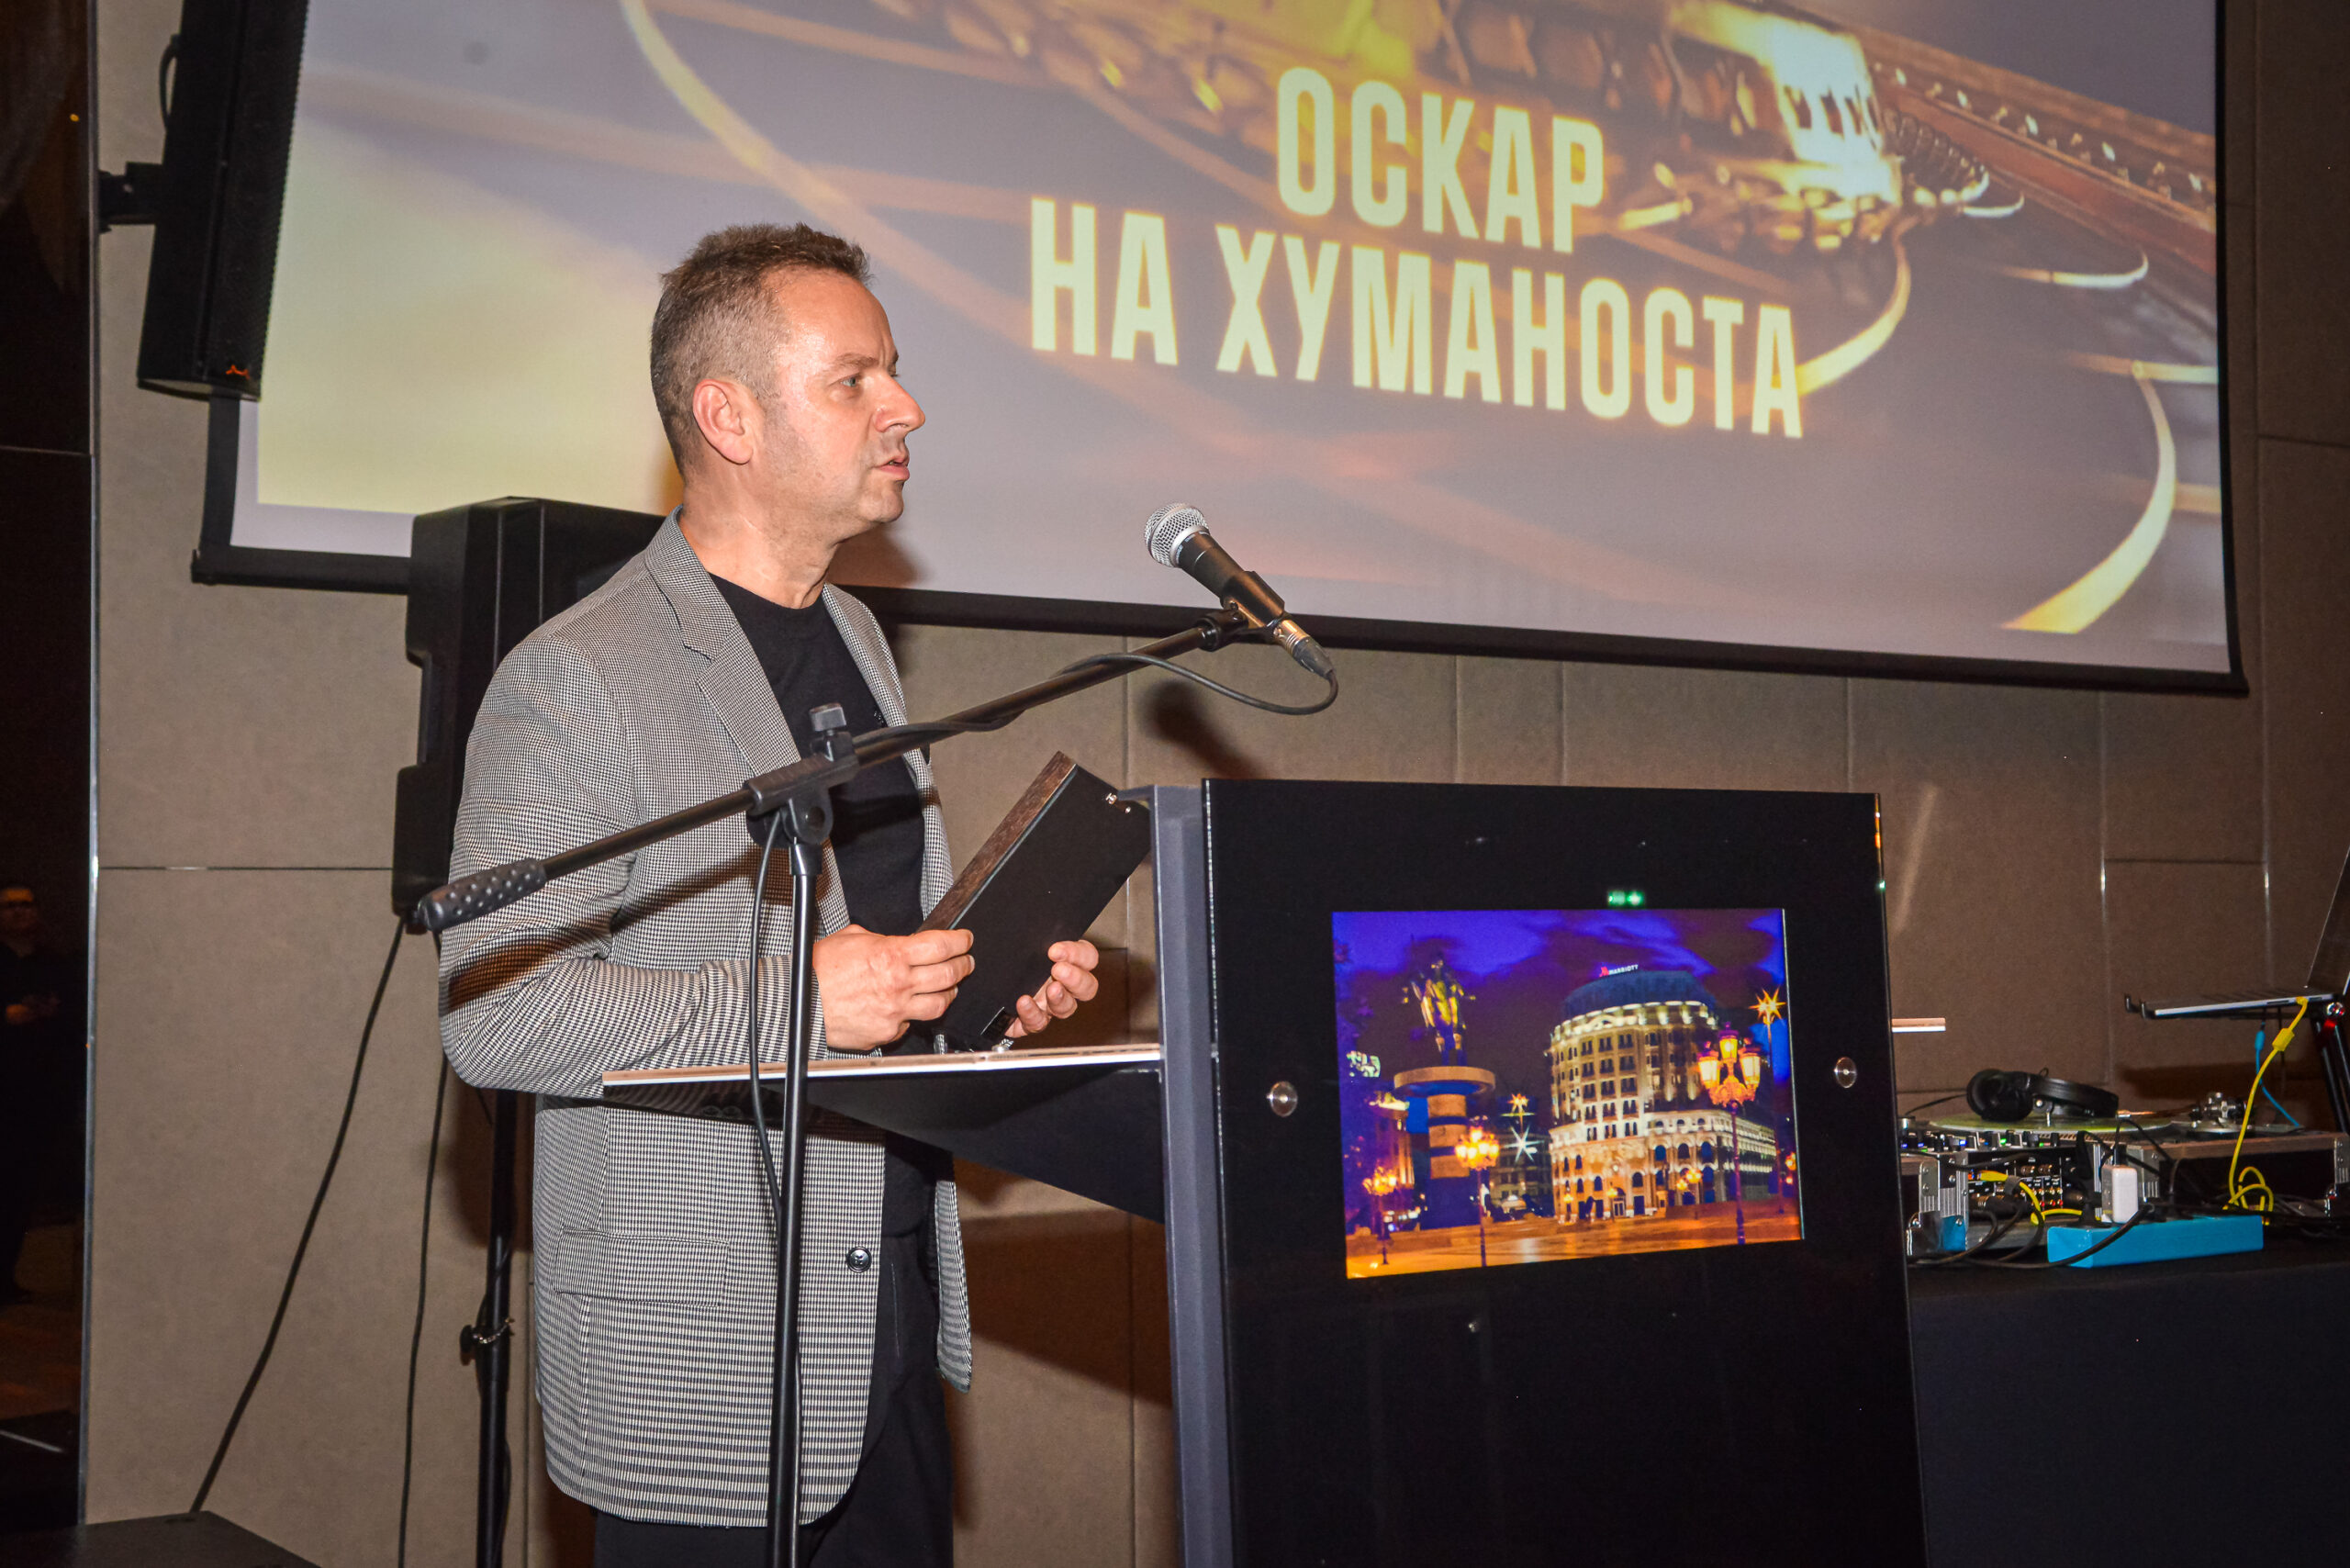 Живко Мукаетов прогласен за Премиум партнер на Манифестацијата „Оскар на хуманоста“ на Црвен крст